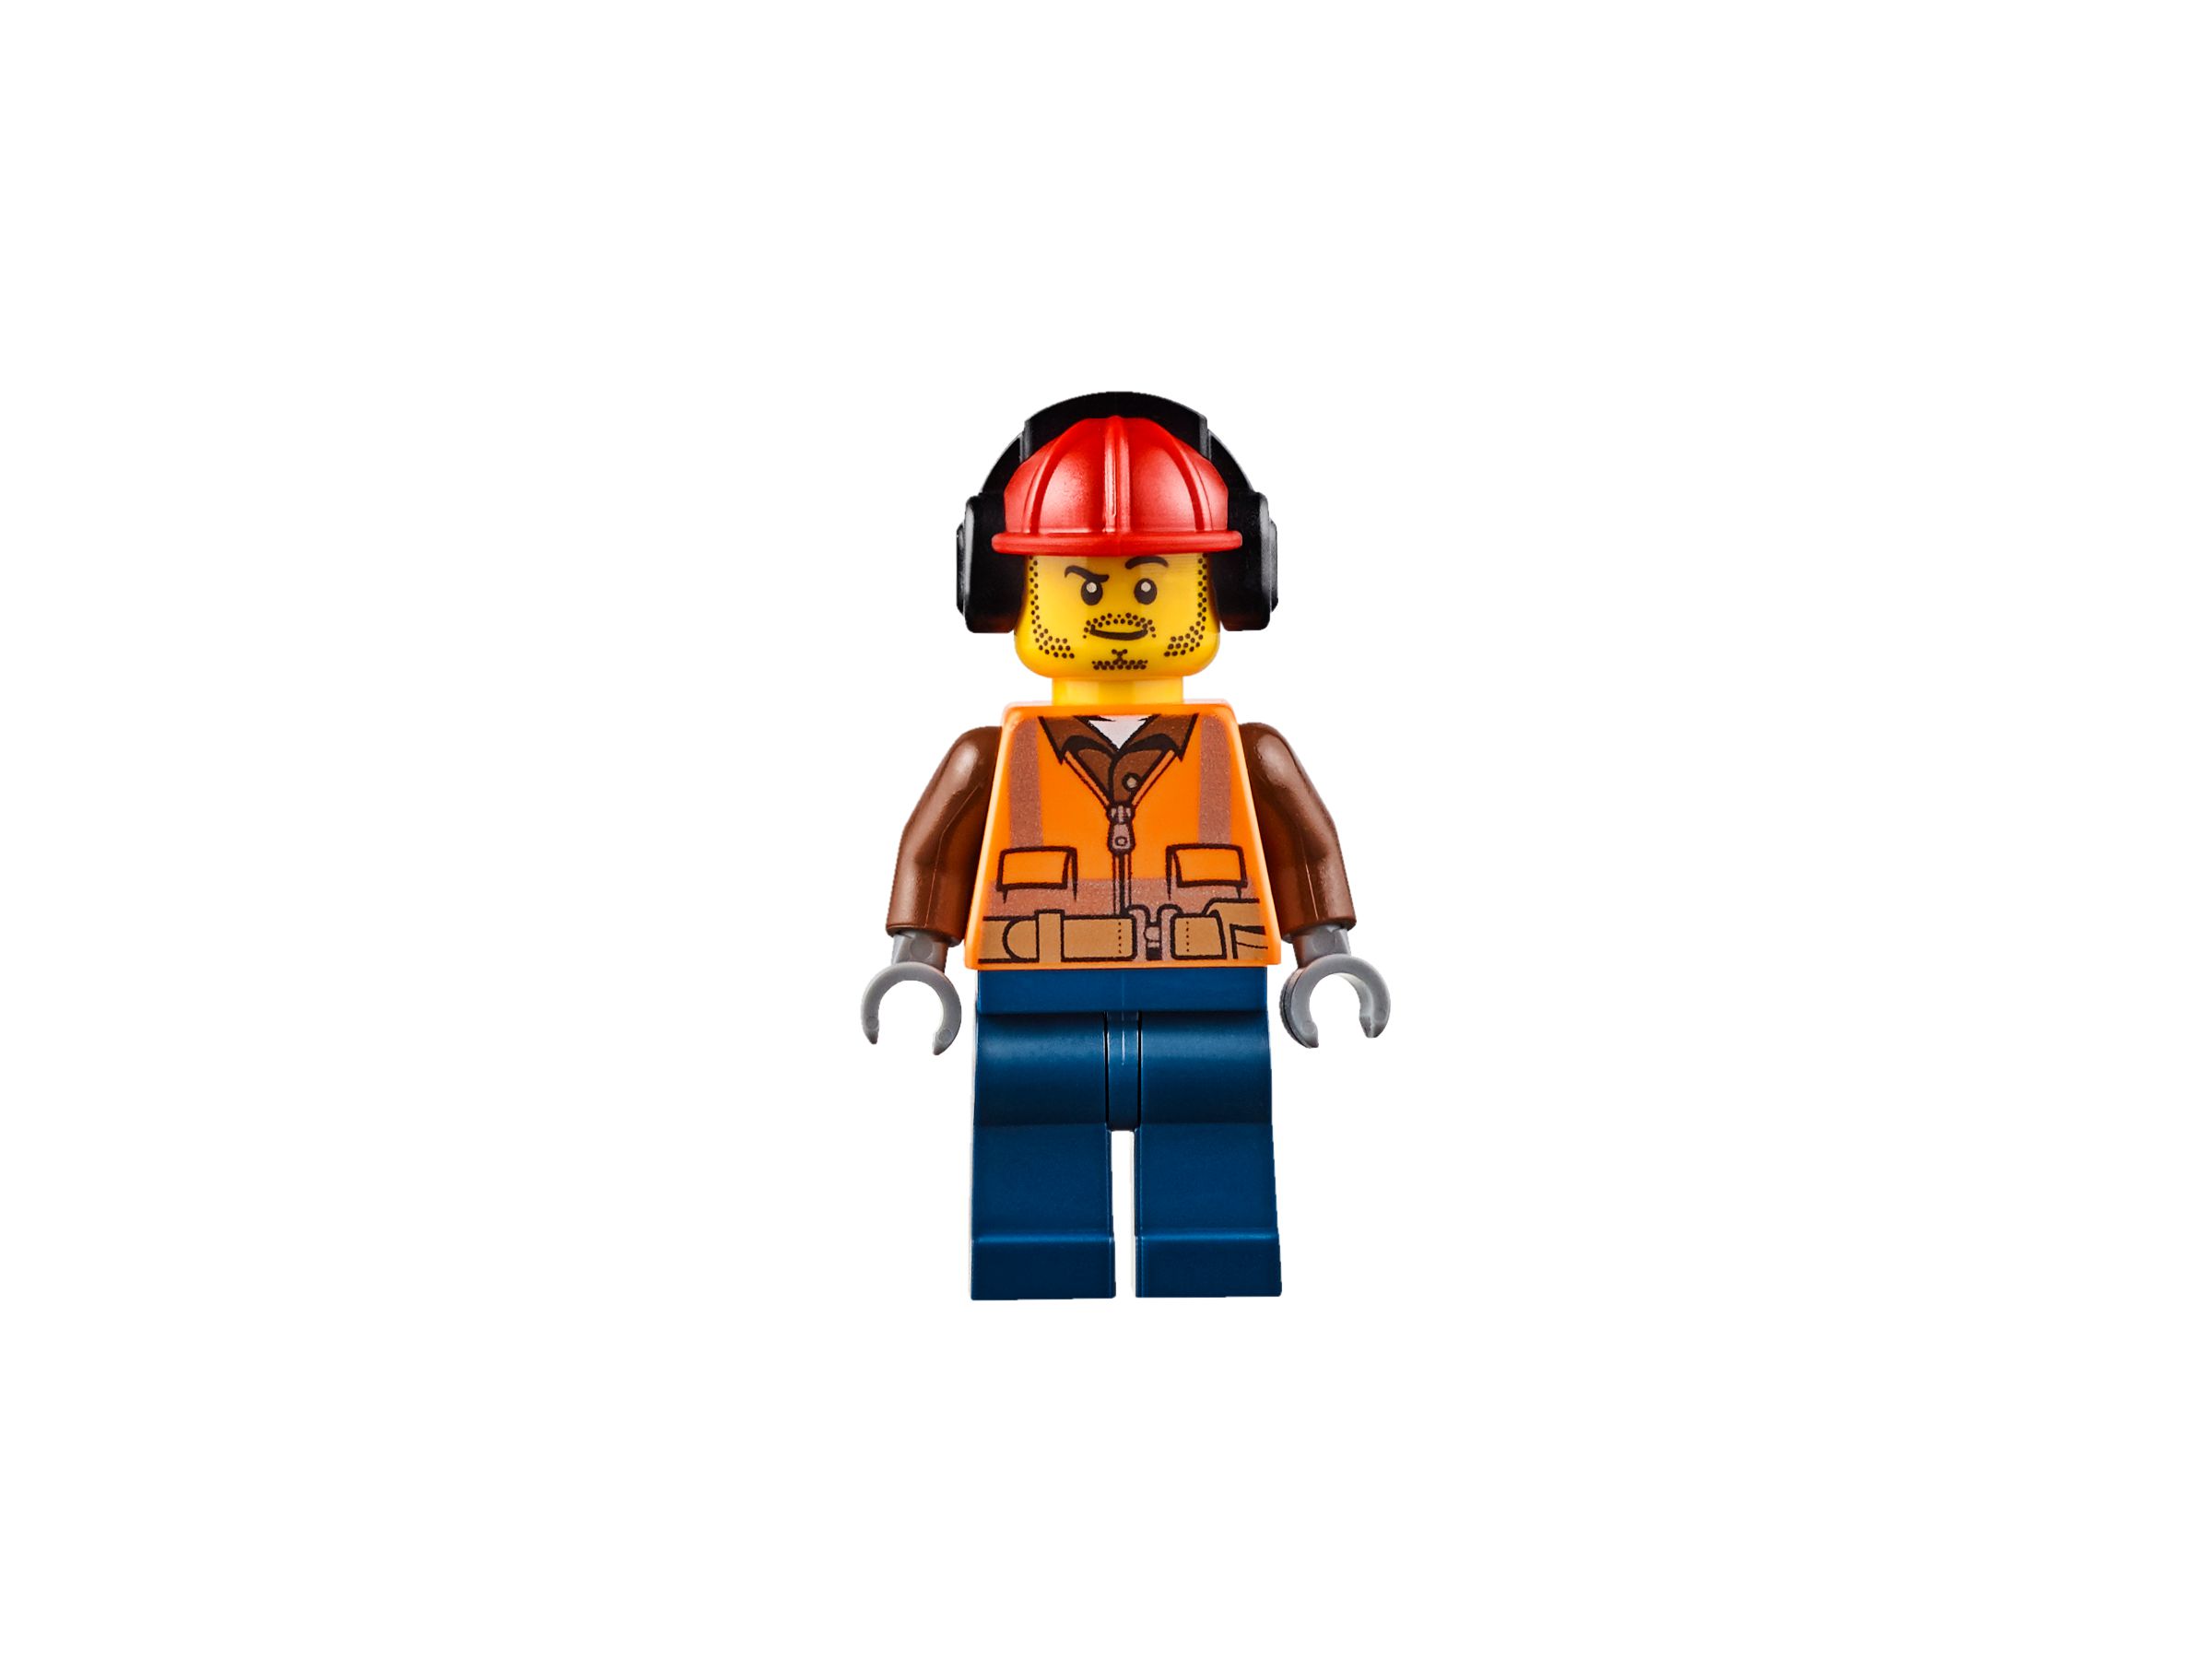 LEGO City 60108 Feuerwehr-Löscheinheit LEGO_60108_alt9.jpg